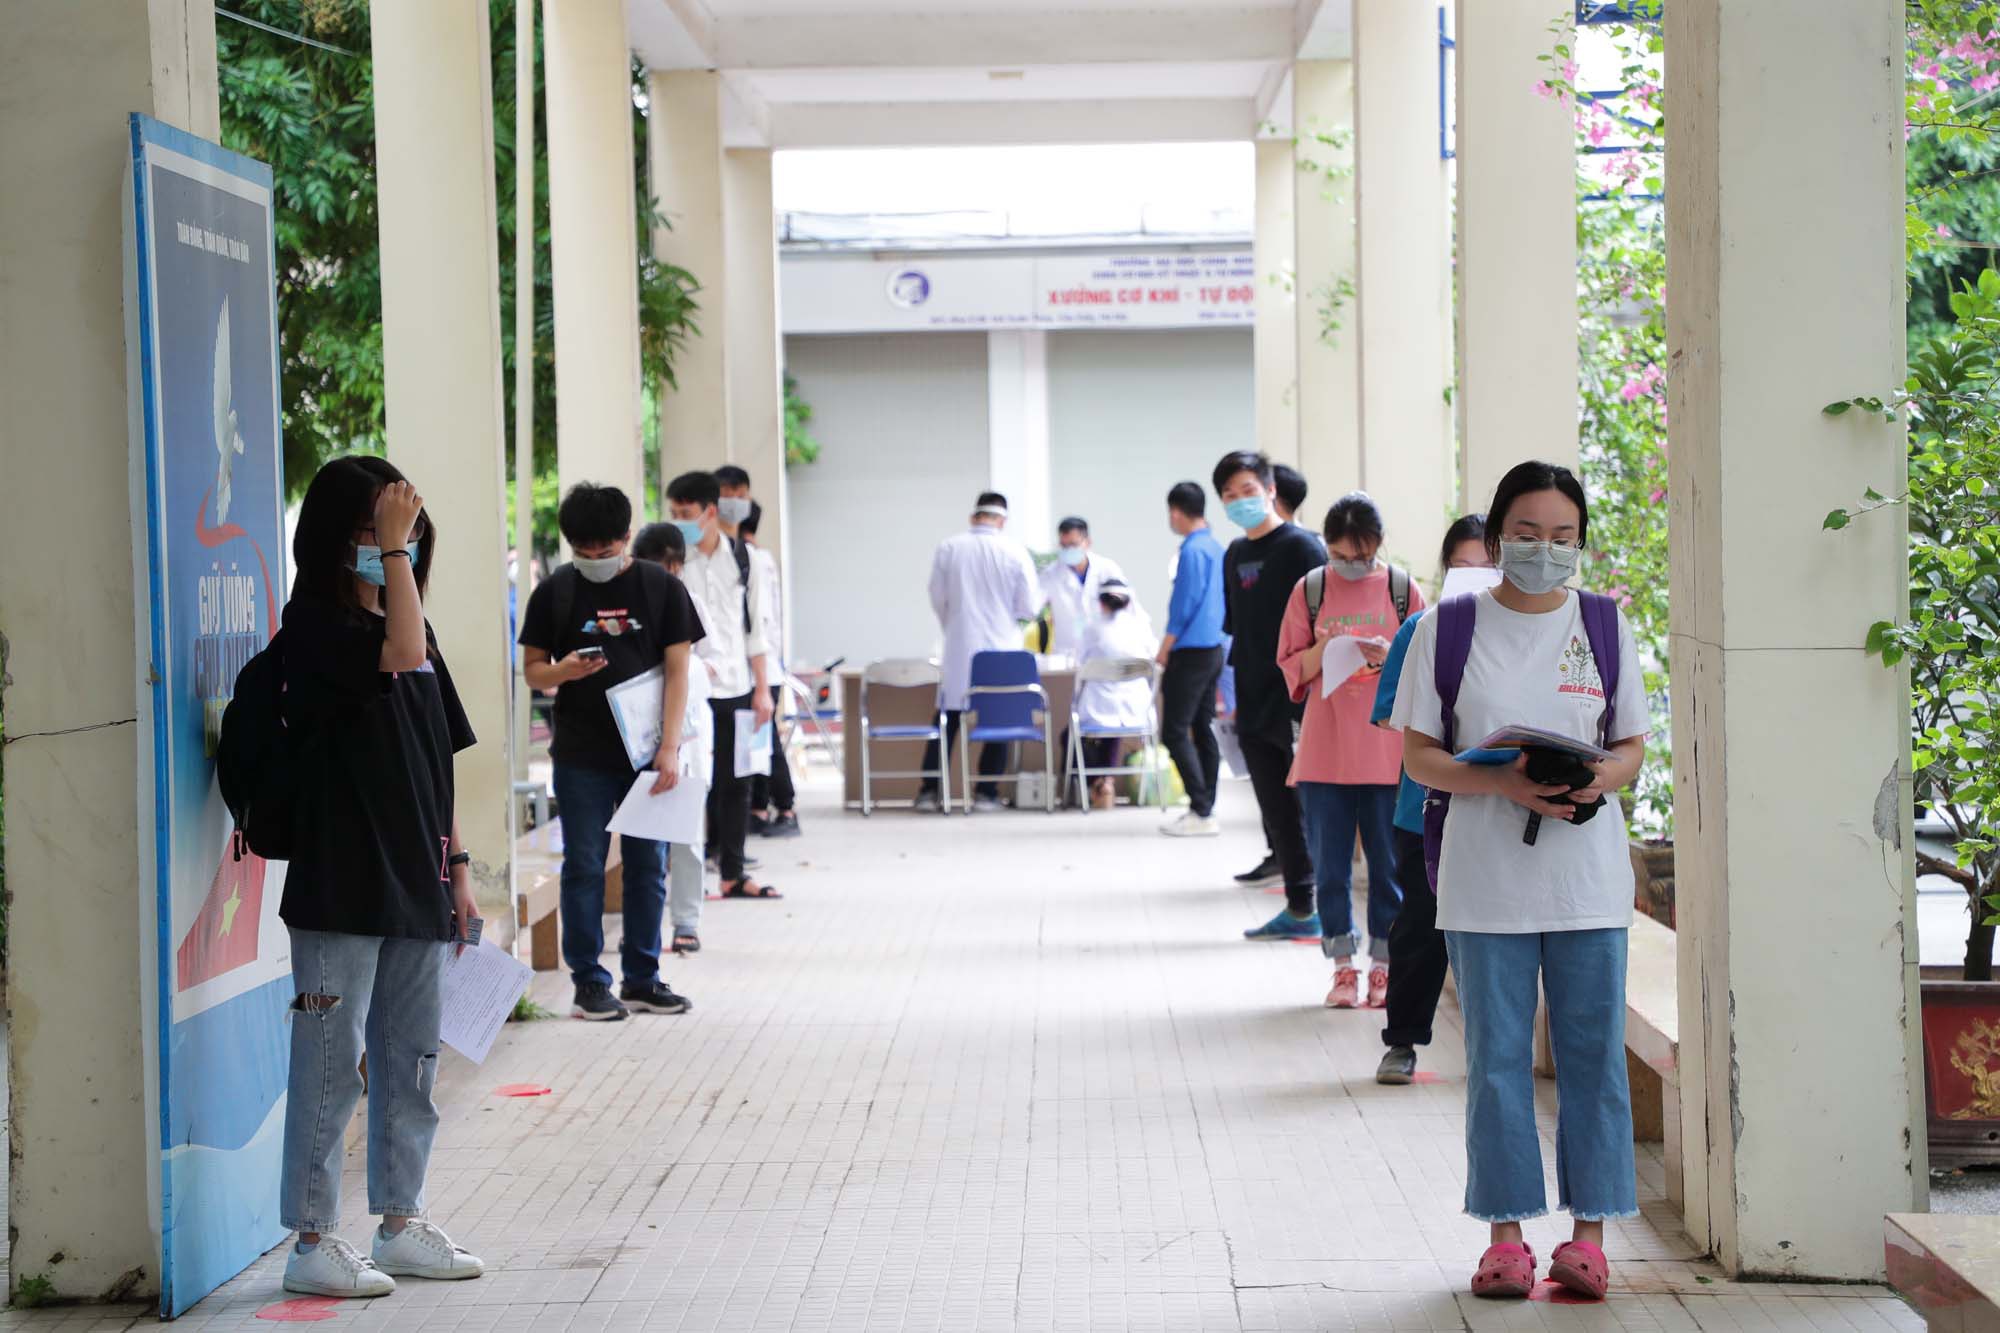 Thí sinh dự thi đợt 1 kỳ thi đánh giá năng lực của ĐH Quốc gia Hà Nội đang chờ vào phòng thi /// Ảnh Ngọc Diệp